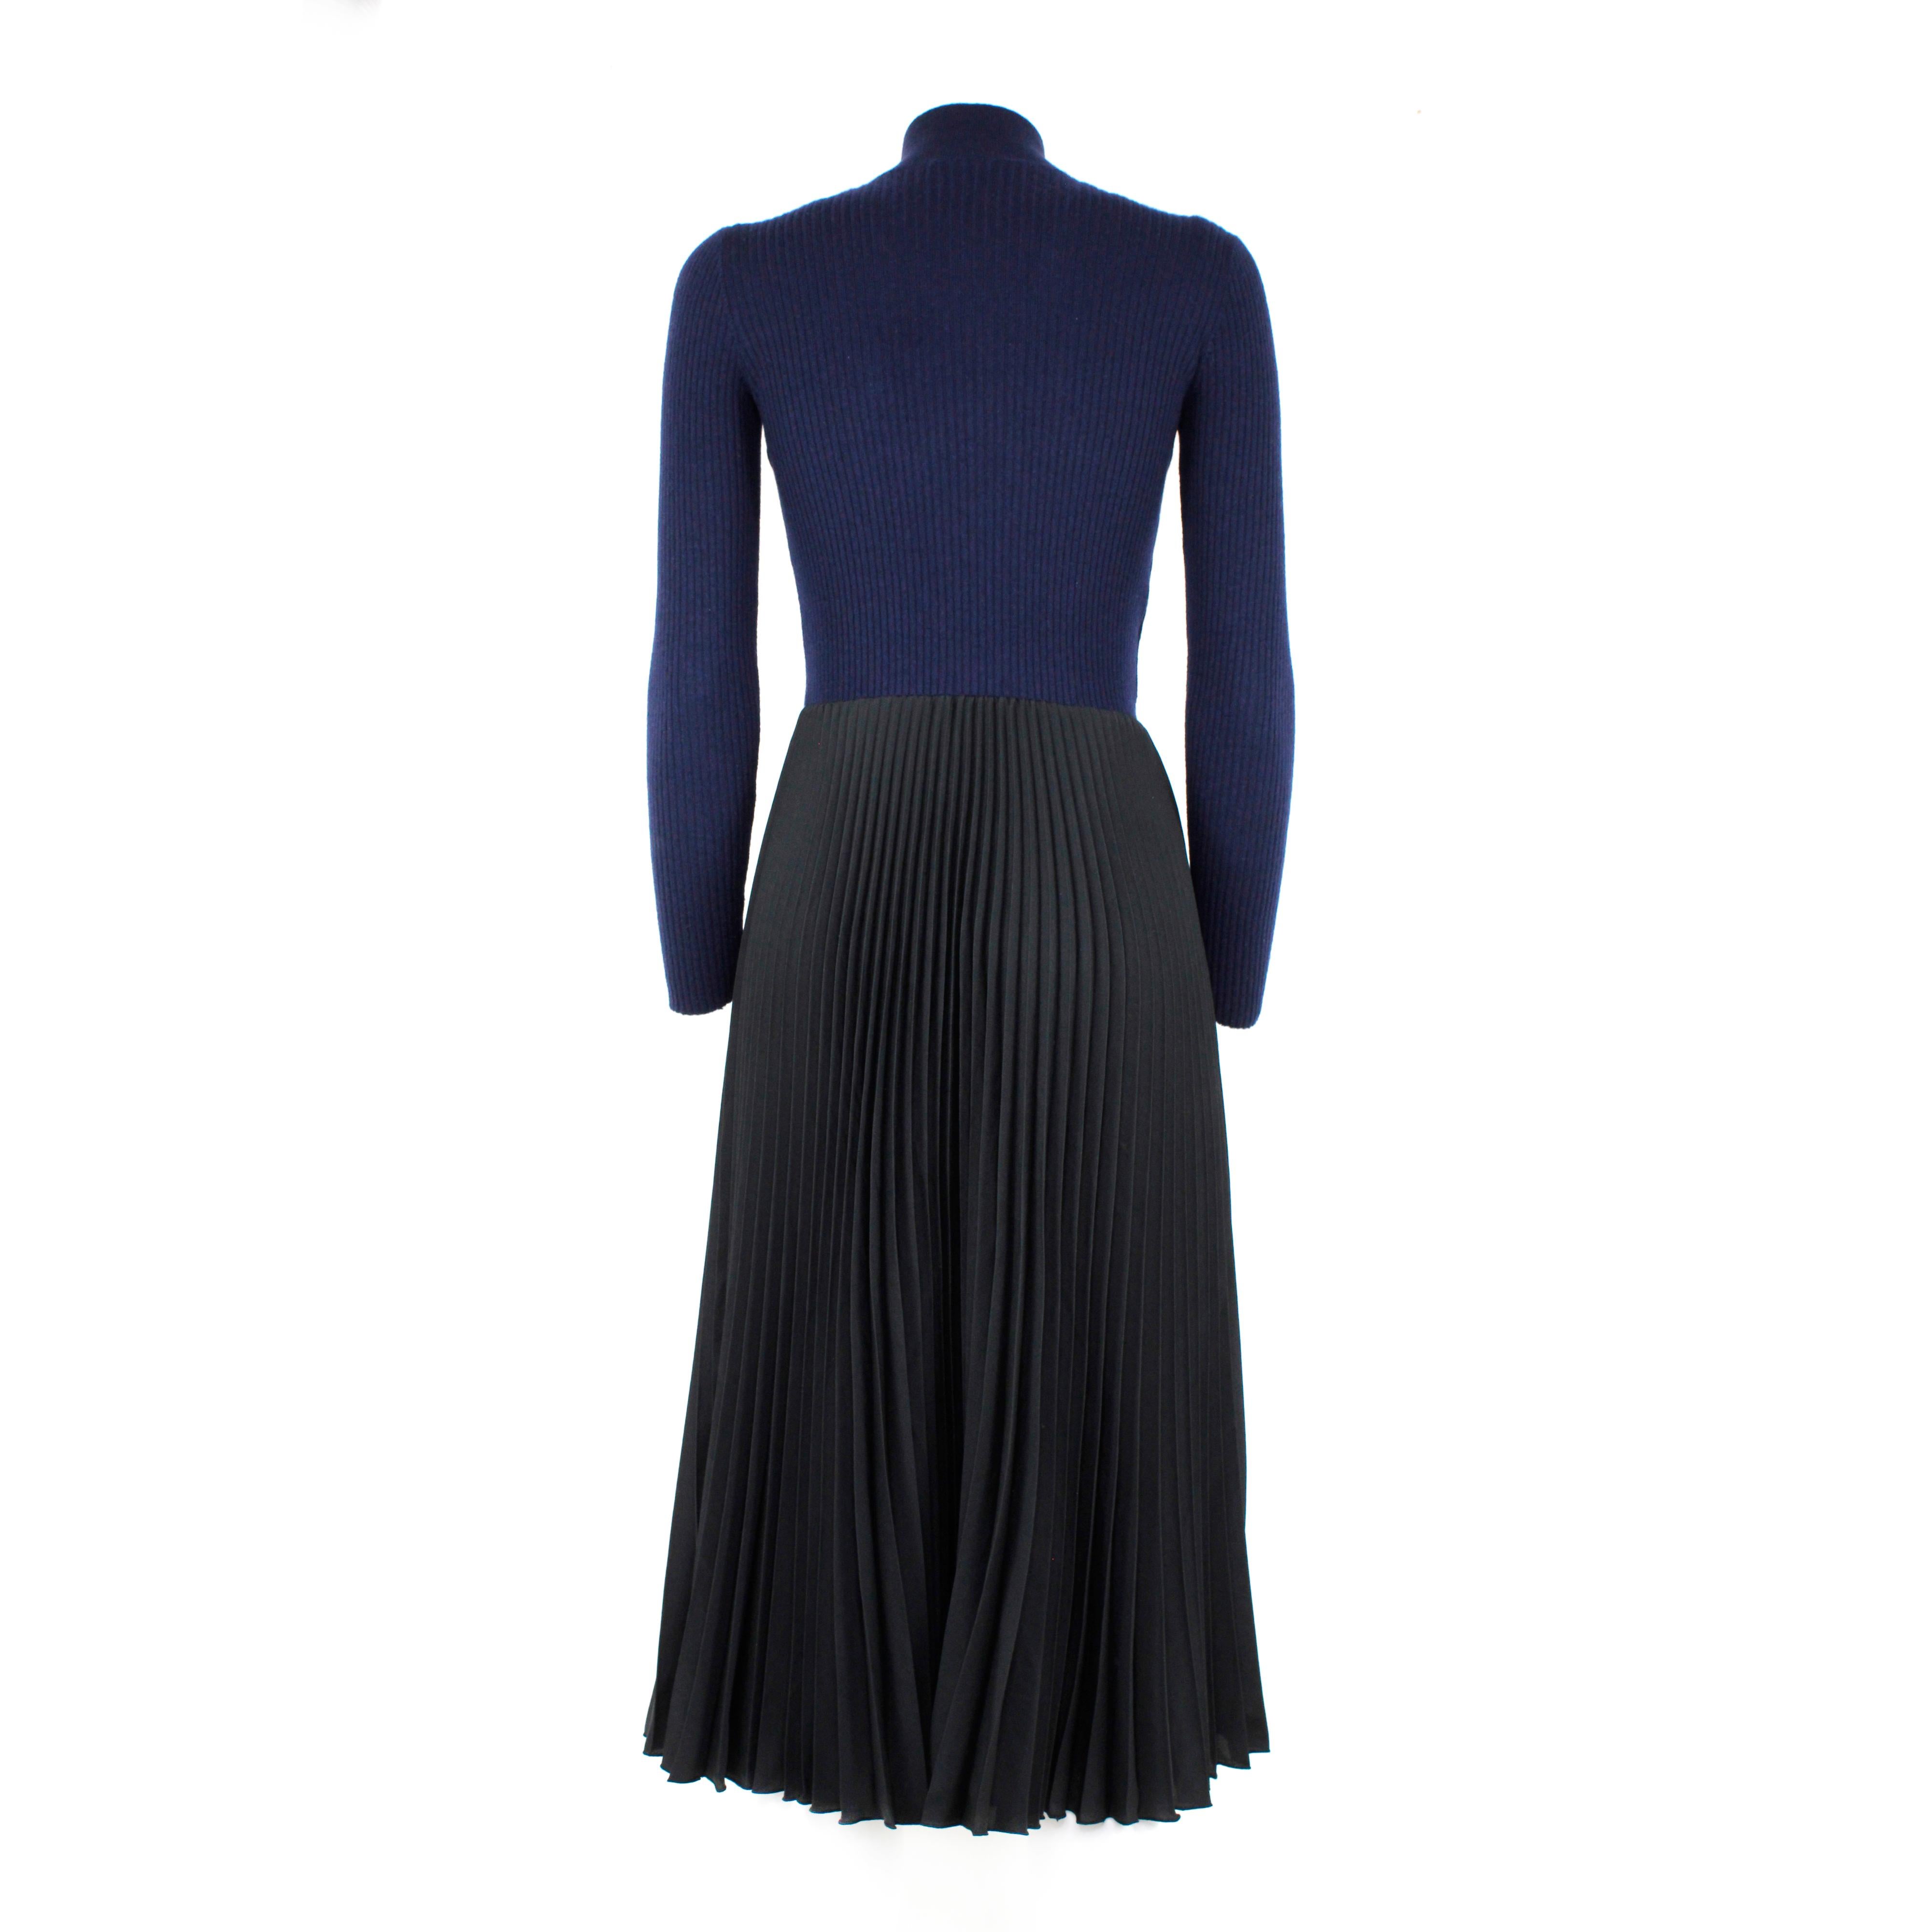 Robe mi-longue en laine, coloris bleu et noir, Prada. Taille 38 IT

Condit : 
Excellent.

Emballage/accessoires :
Cintre.